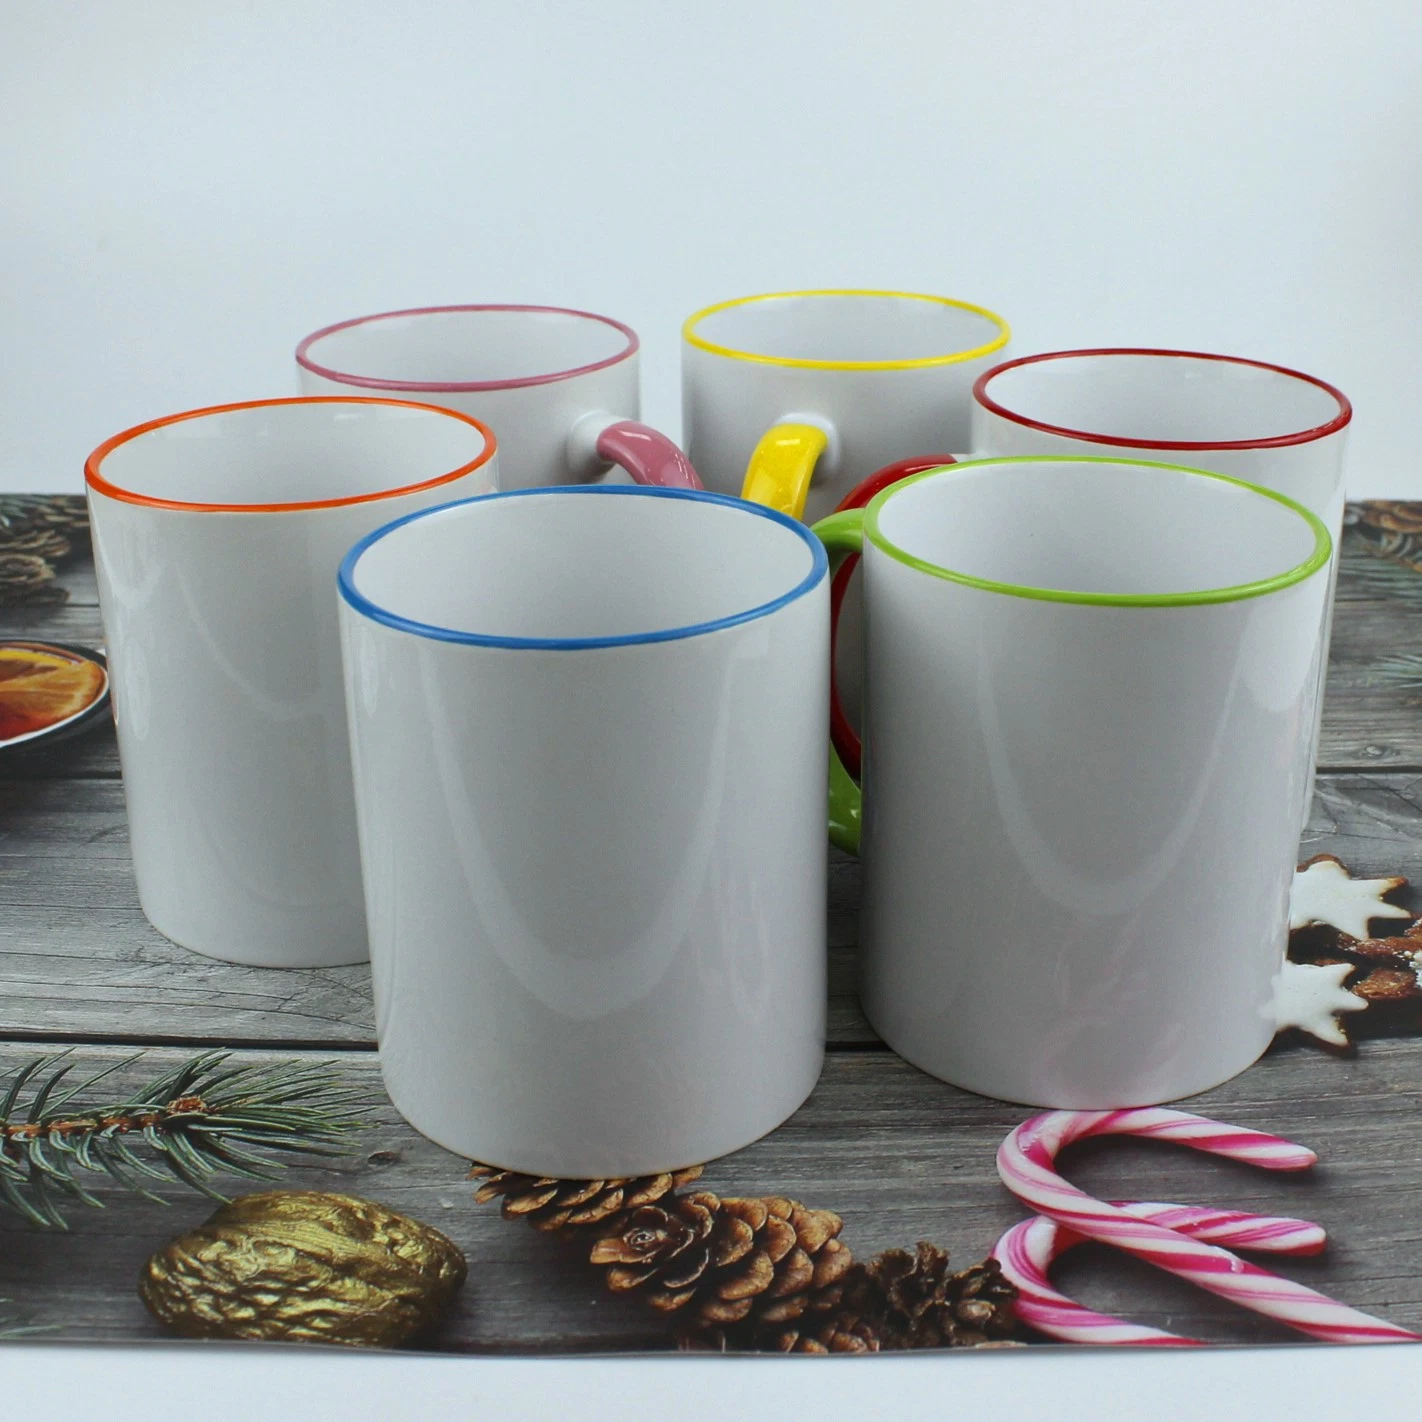 La porcelaine blanche simple tasse tasse en céramique de couleur pure glaçure Café Tasse de thé ménage la cuvette de cadeaux publicitaires